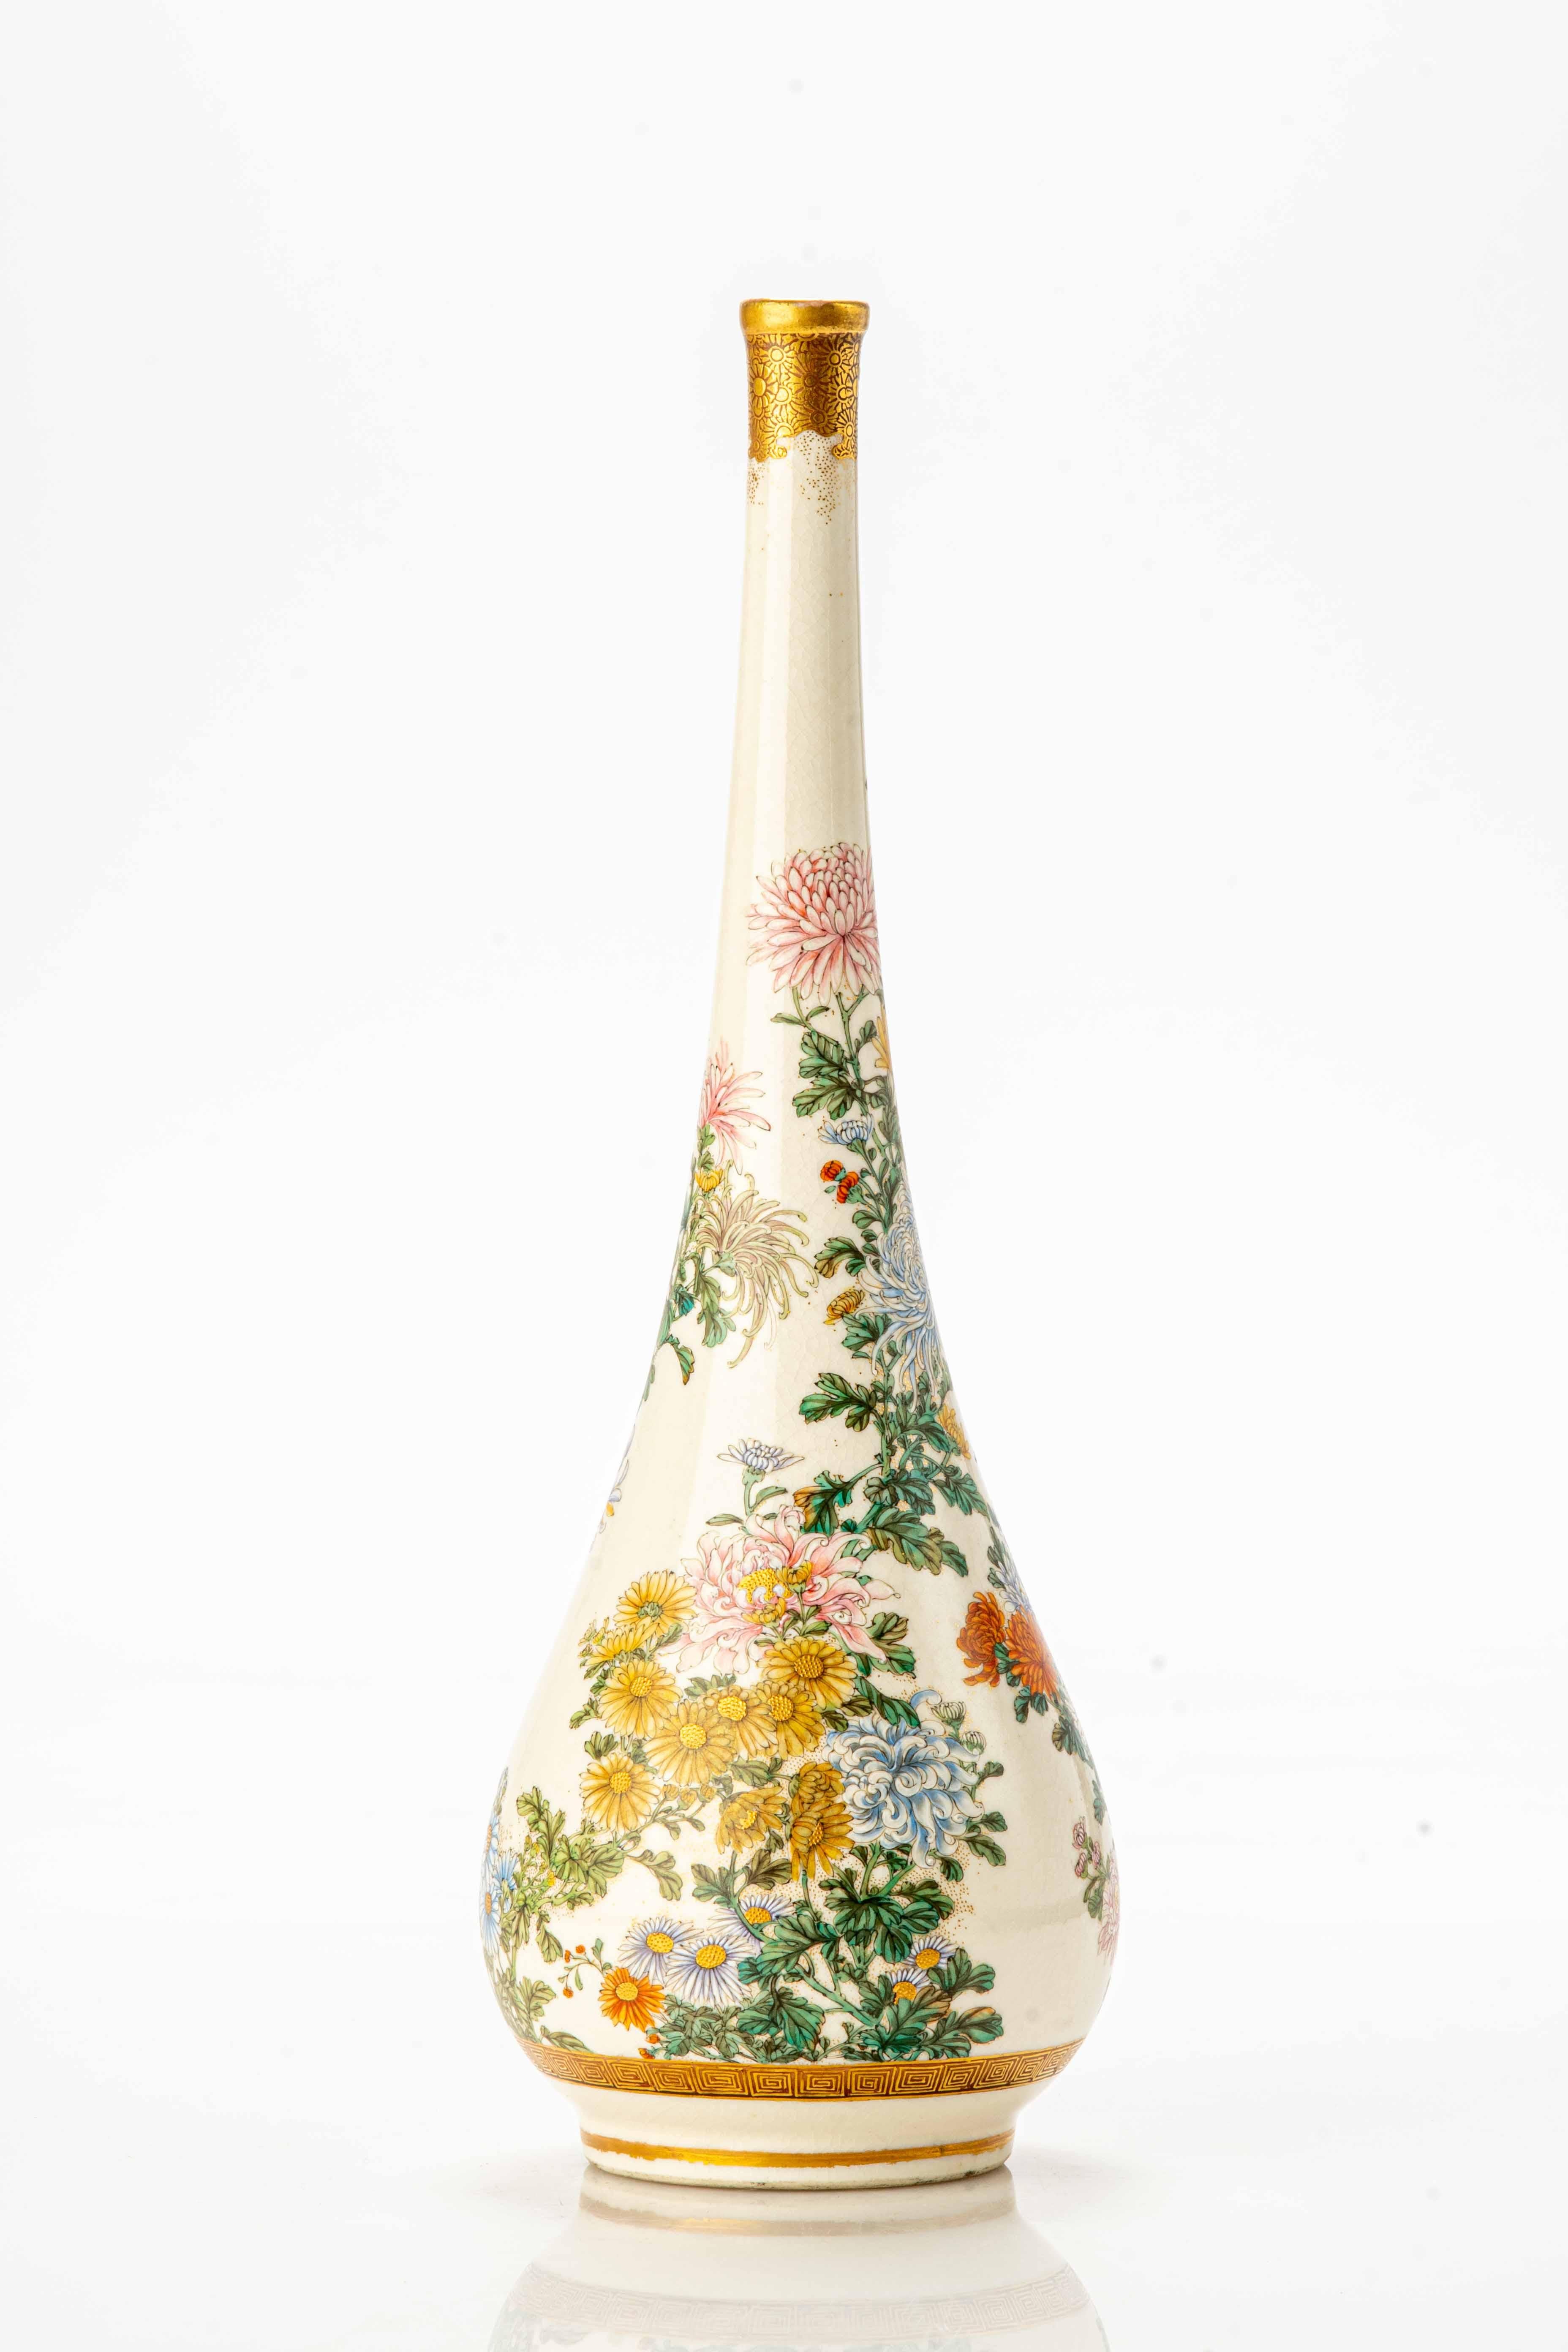 Vase de Satsuma, au col élancé et à la partie terminale ornée d'or pur décoré d'un jardin de chrysanthèmes, réalisé avec de l'émail et de l'or en relief.

Différentes variétés de chrysanthèmes sont représentées, avec précision et détail, qui